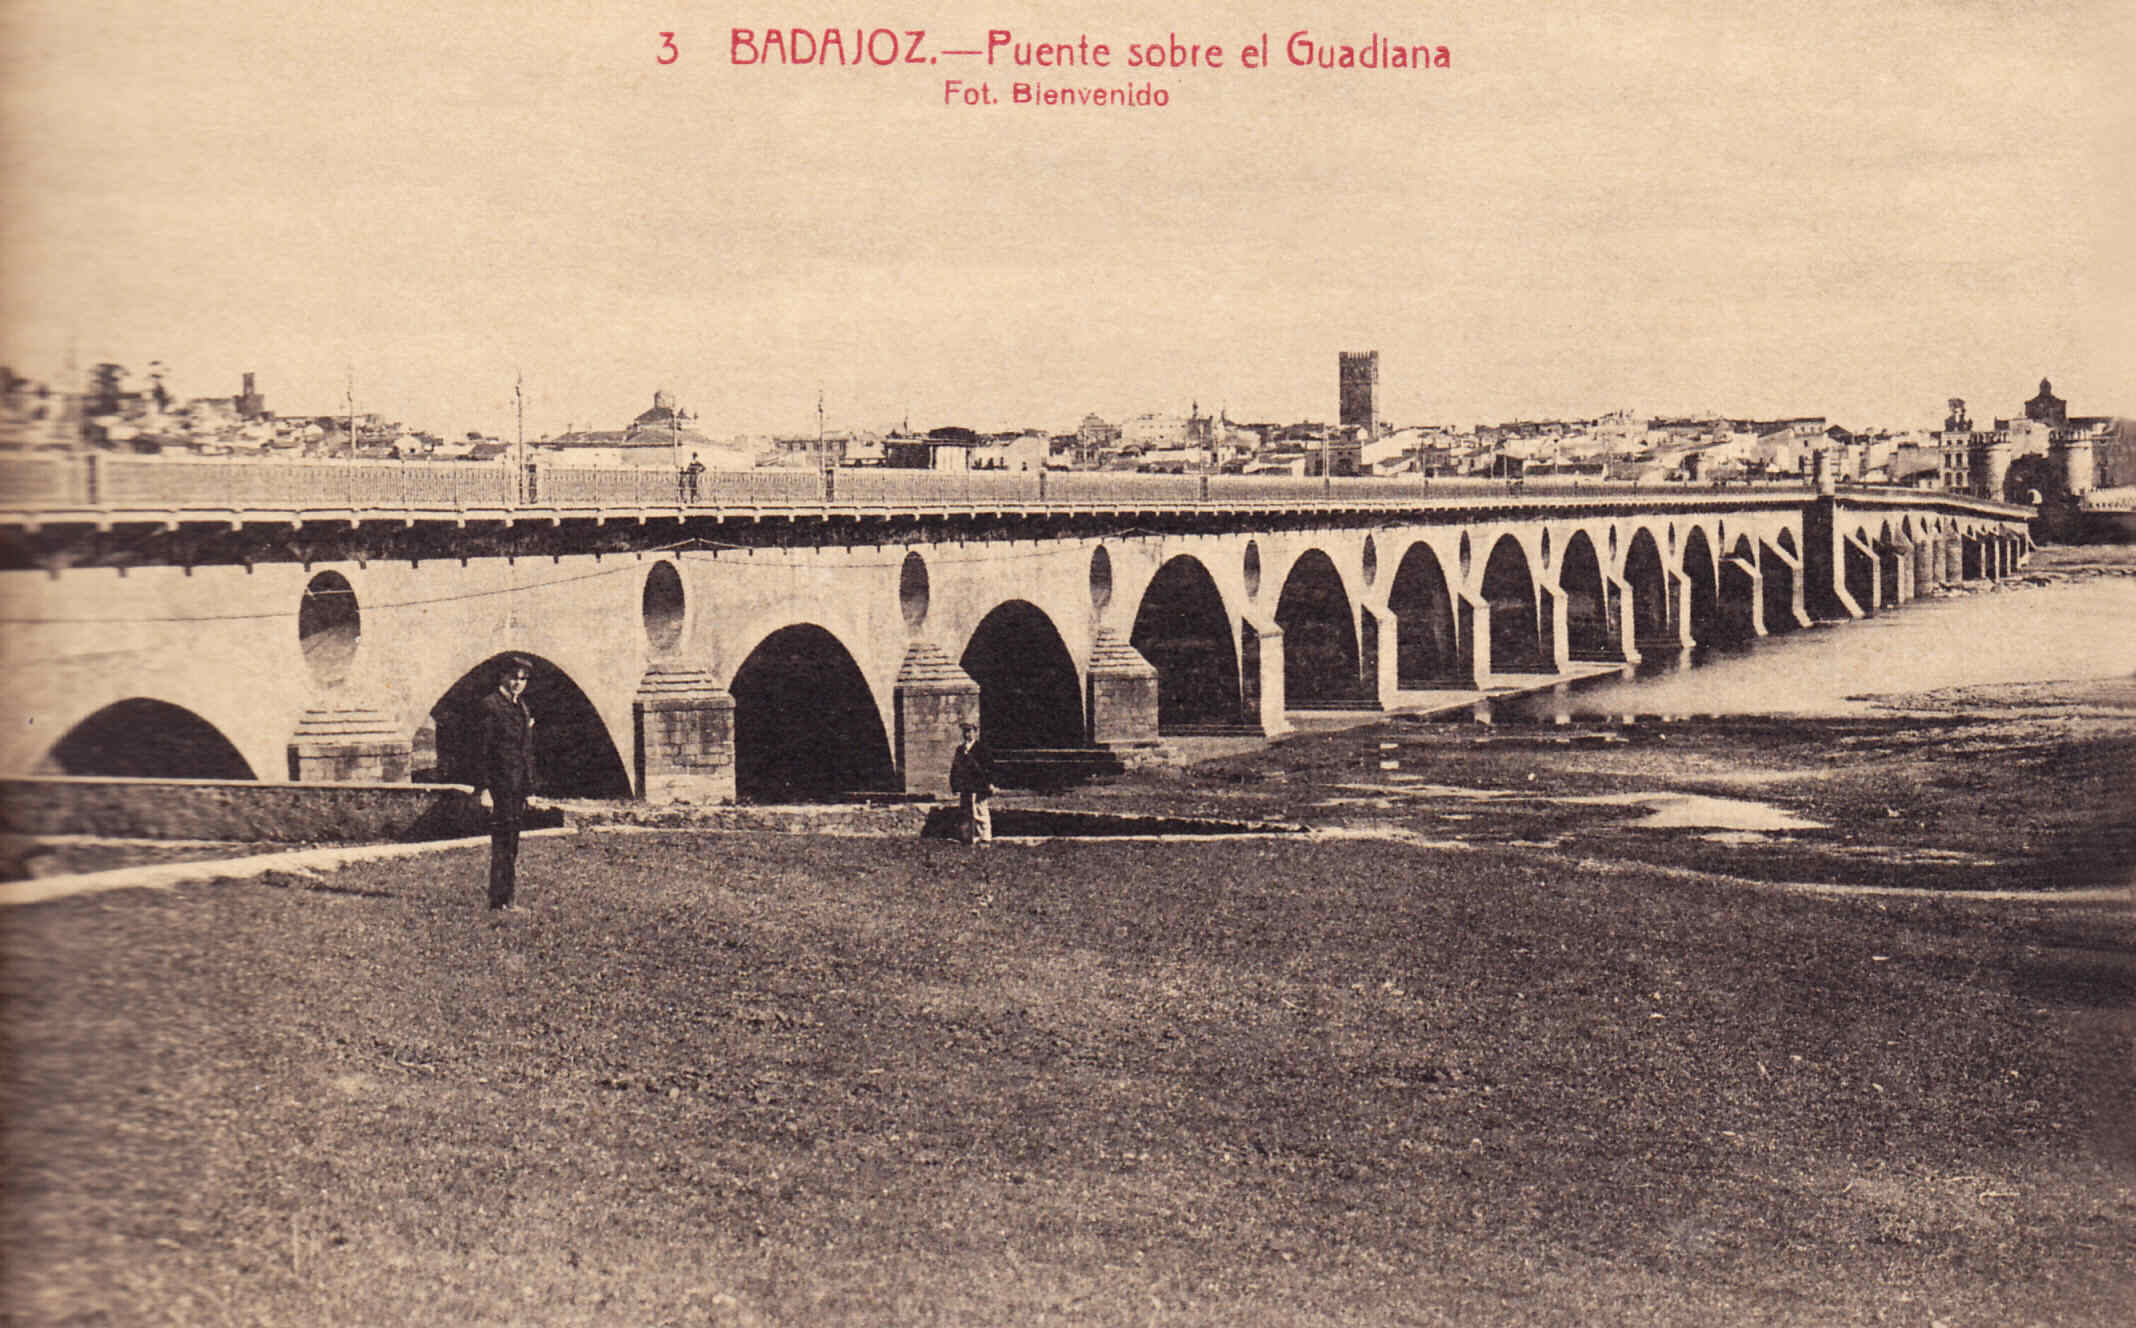 Badajoz Sus murallas a principios del siglo XX